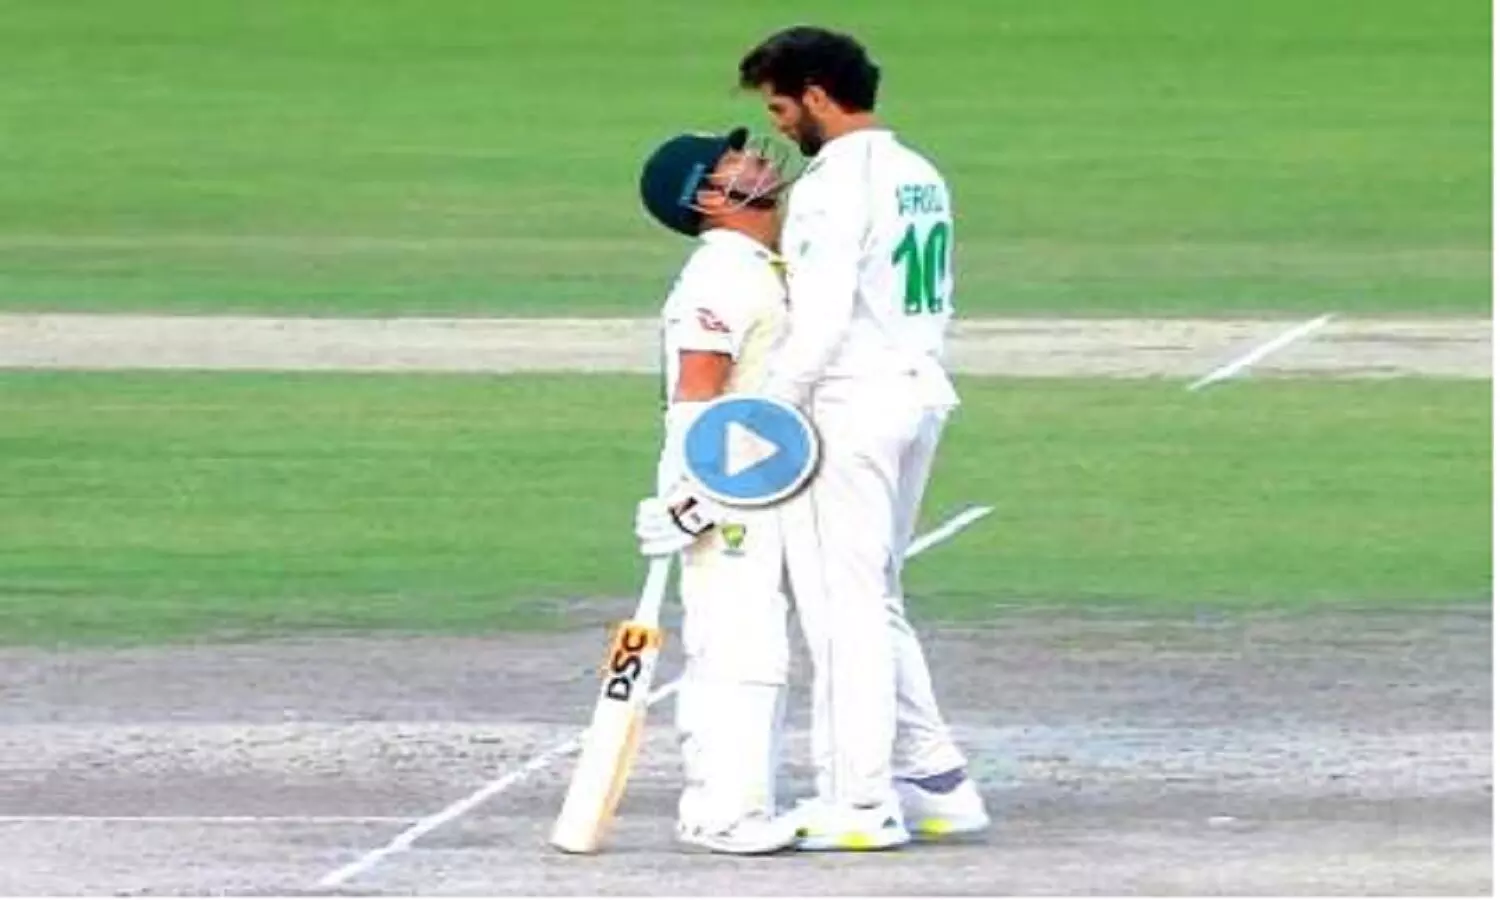 David Warner Shaheen Afridi Video: बीच मैच में भिड़ गए वार्नर और अफरीदी, फिर जो हुआ वो हैरान करने वाला था